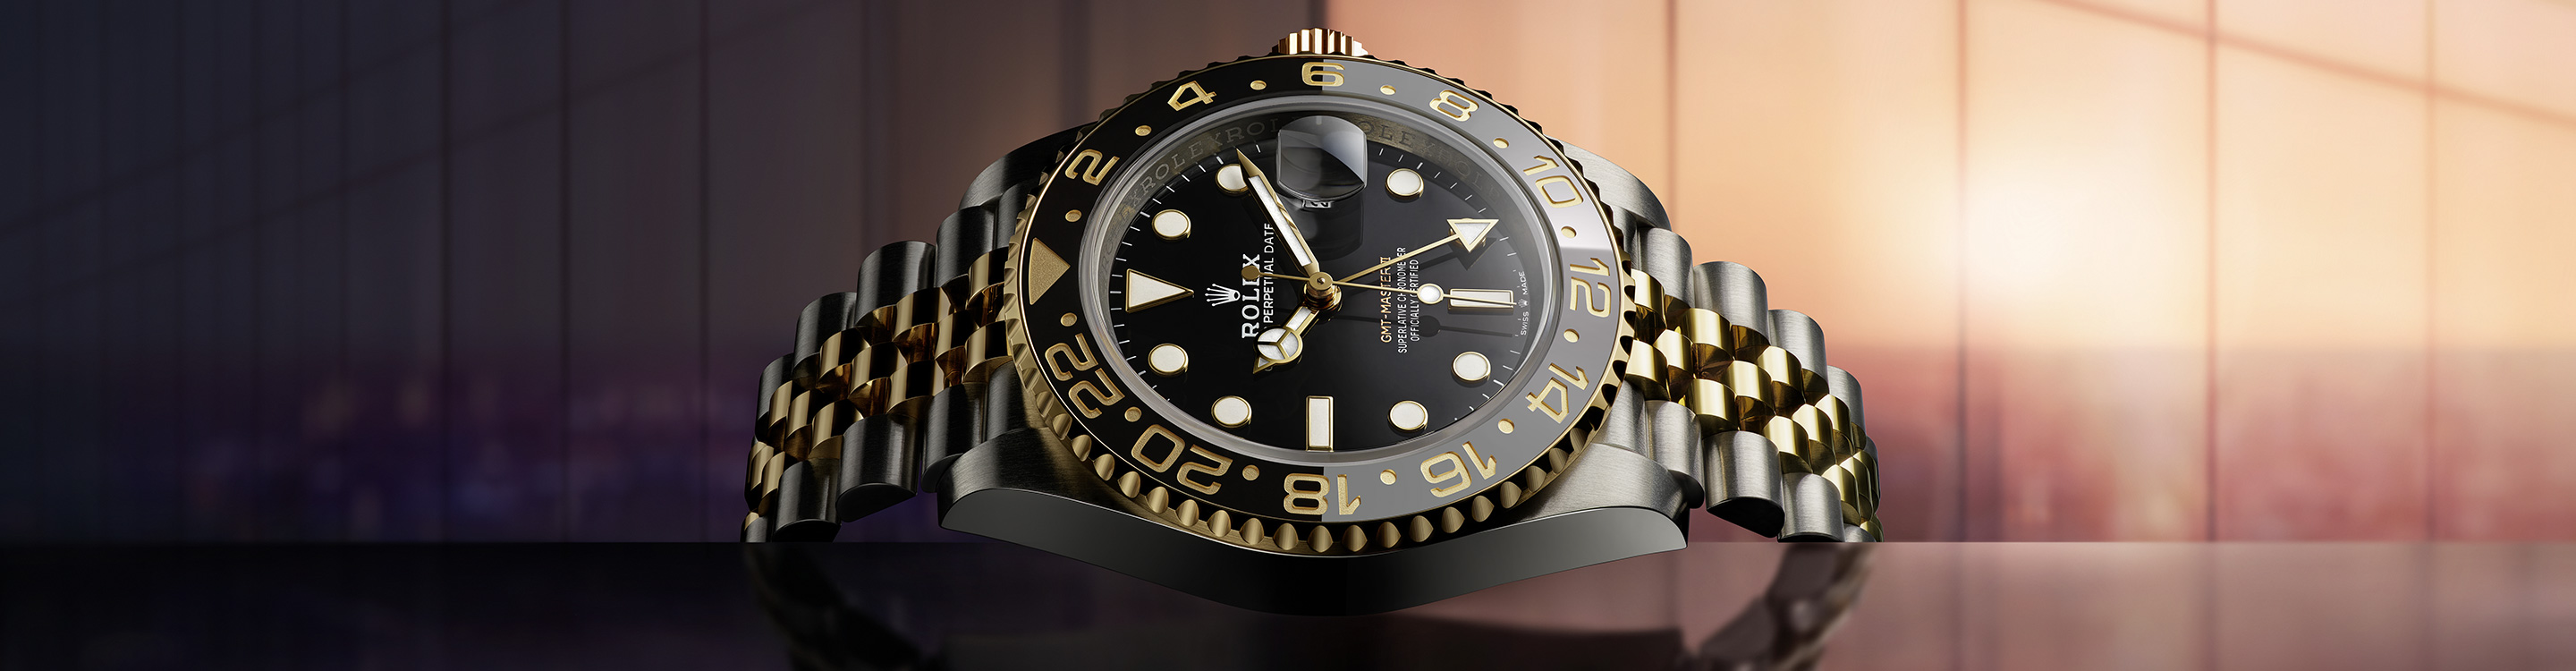 Rolex GMT Master II watch